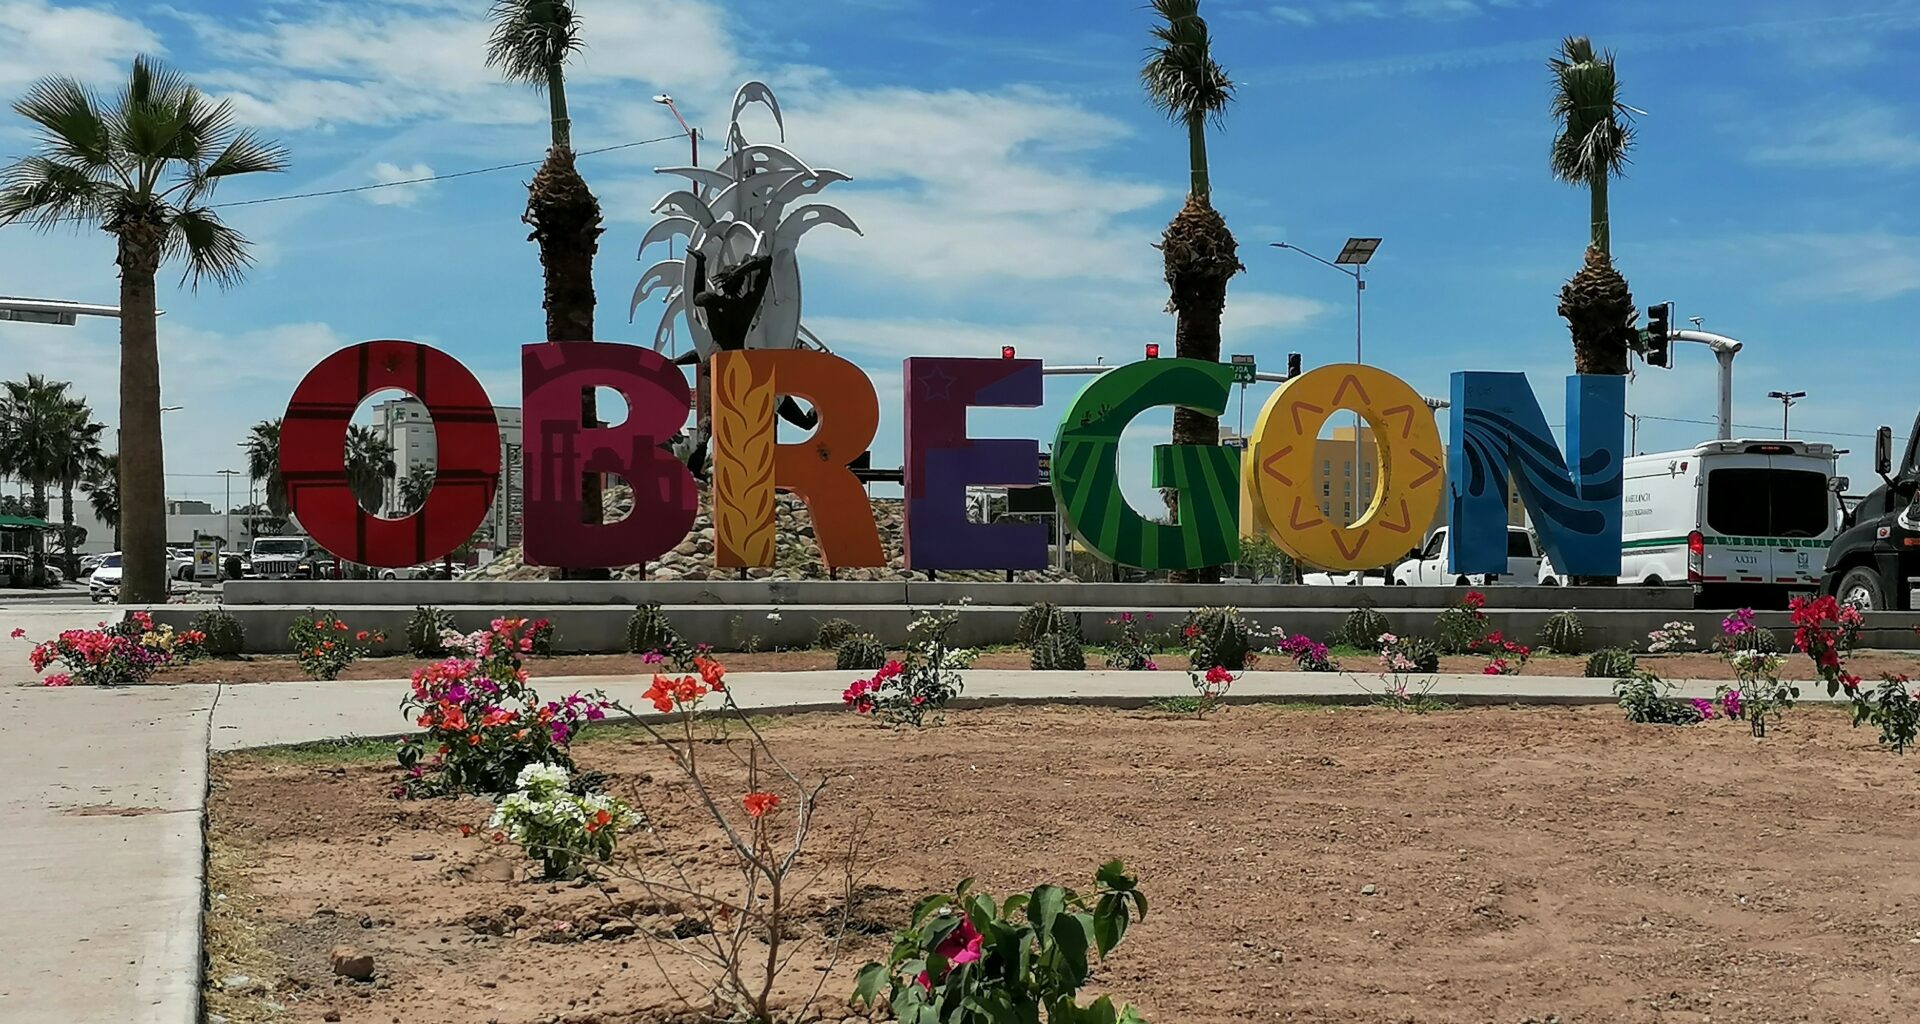 2 ciudad obregon se resiste a perder su orgullo reportaje